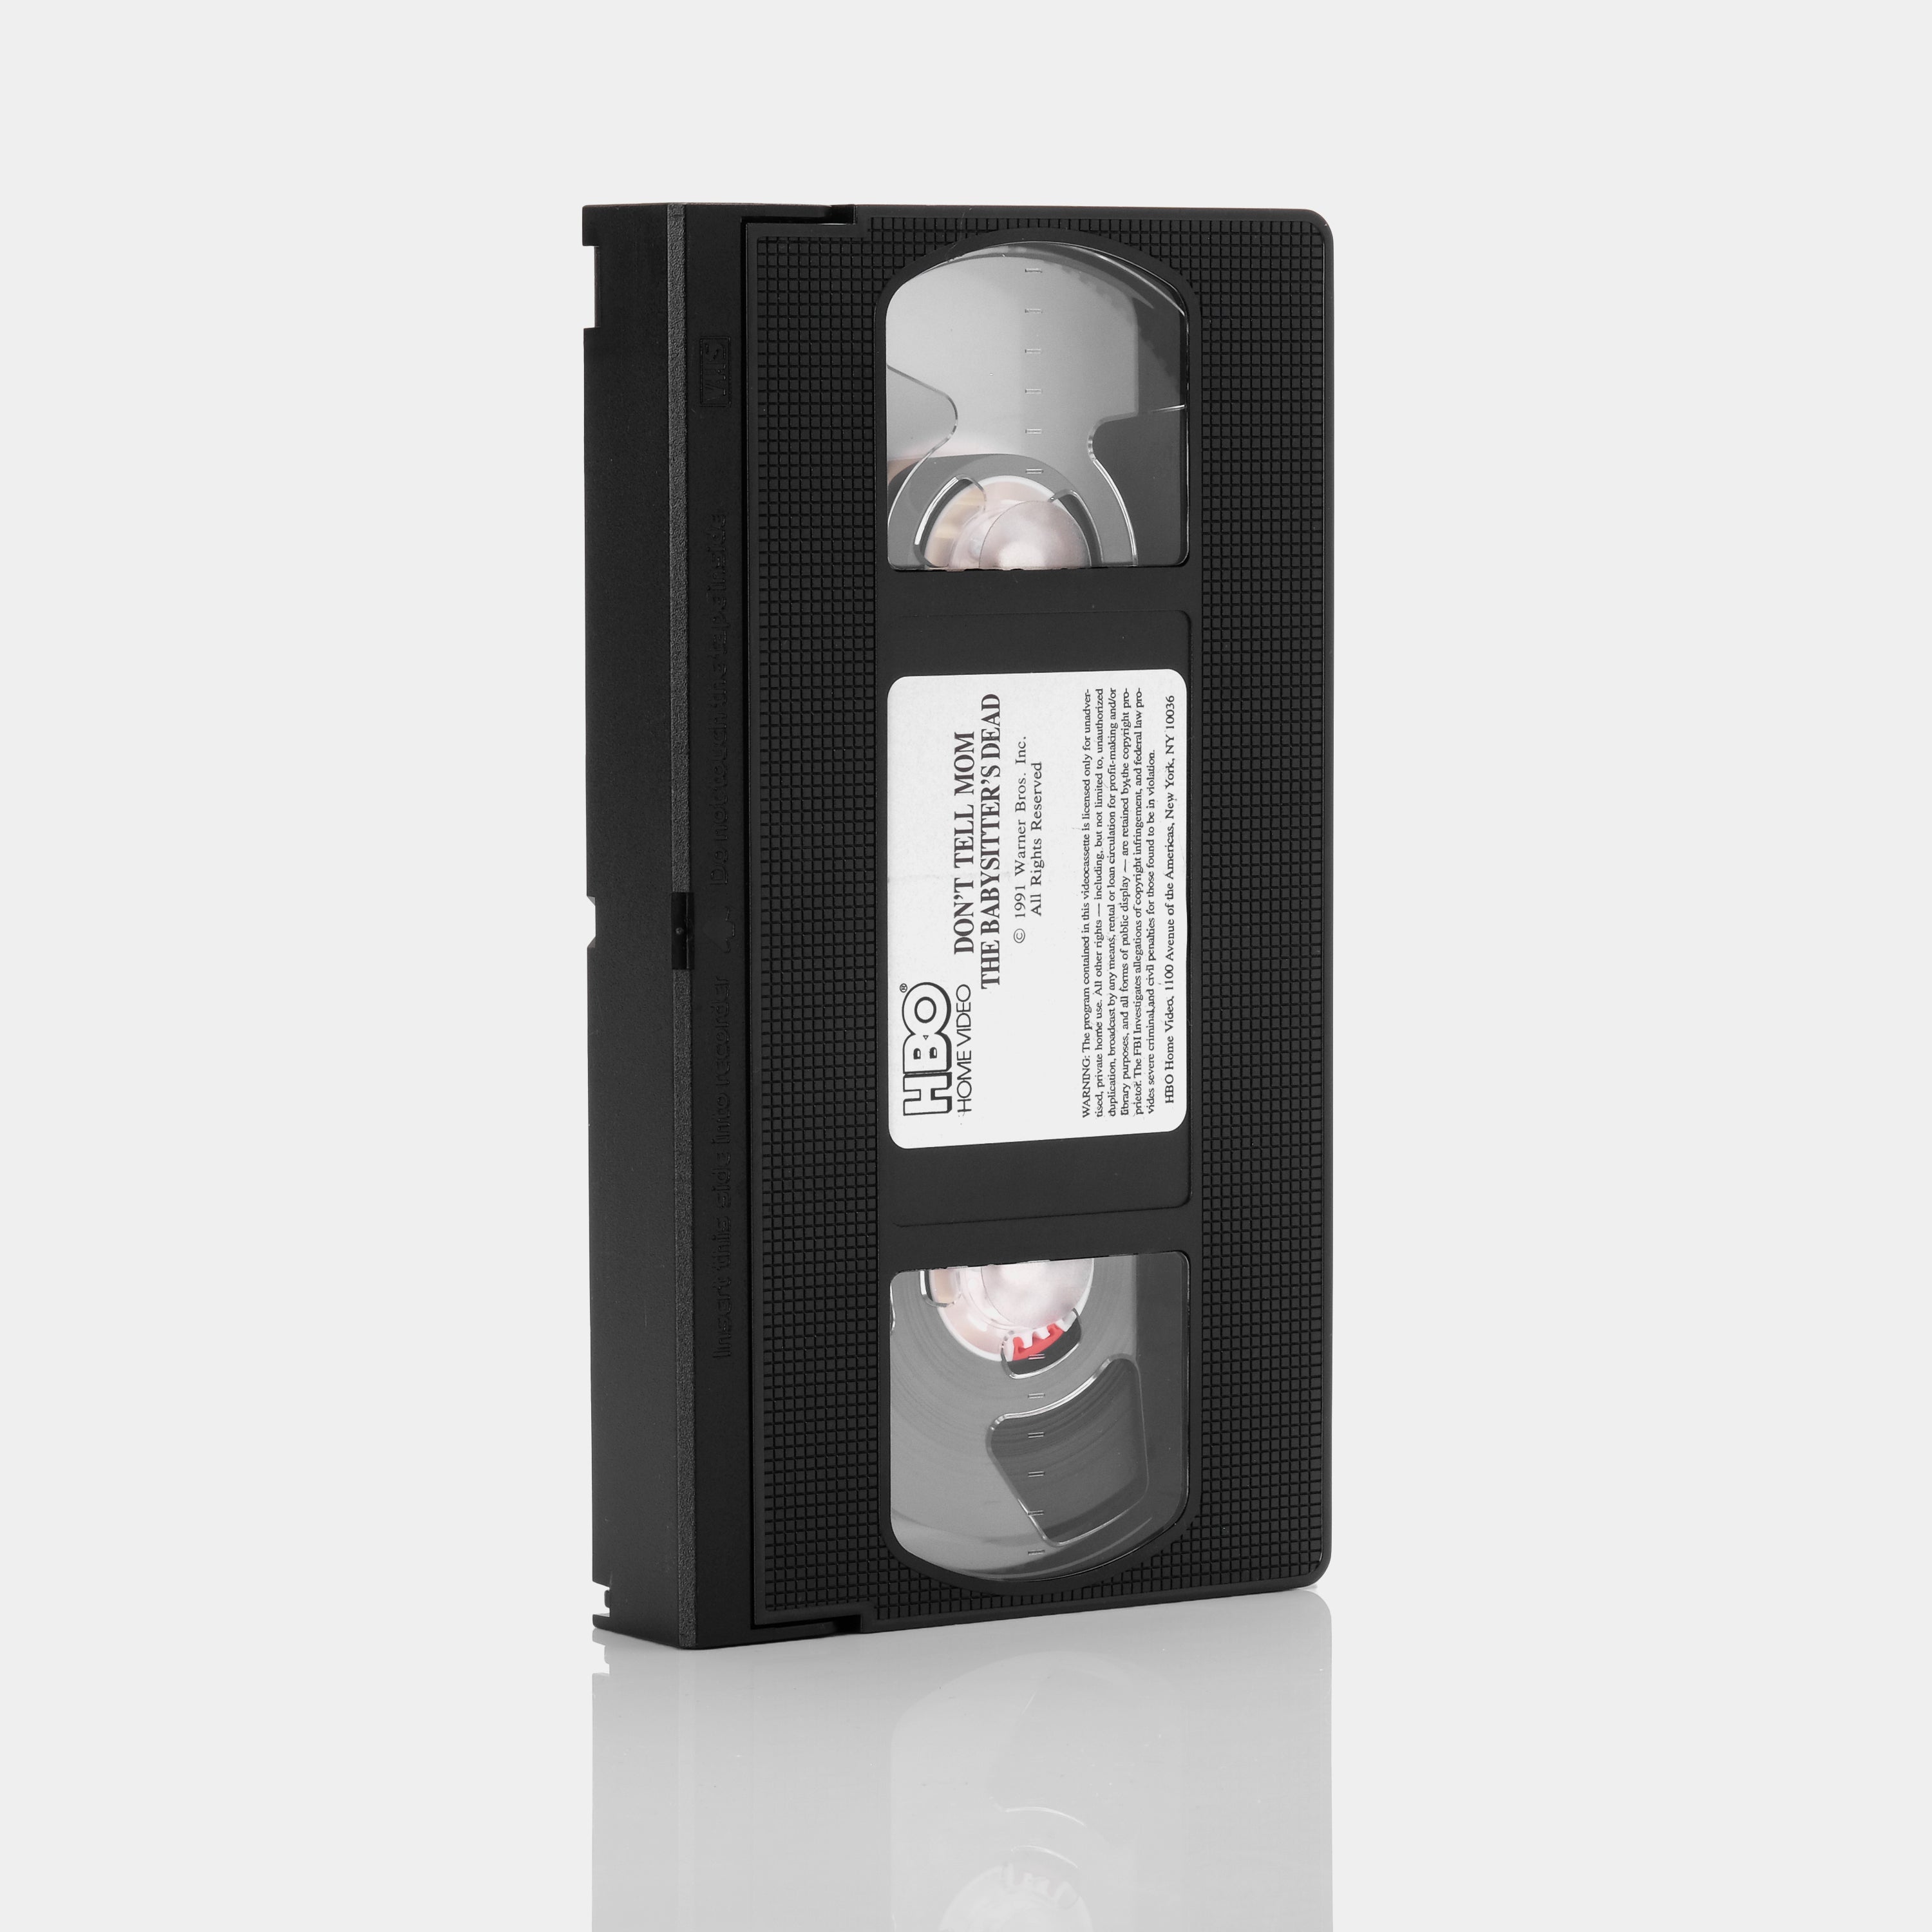 Don't Tell Mom the Babysitter's Dead VHS Tape